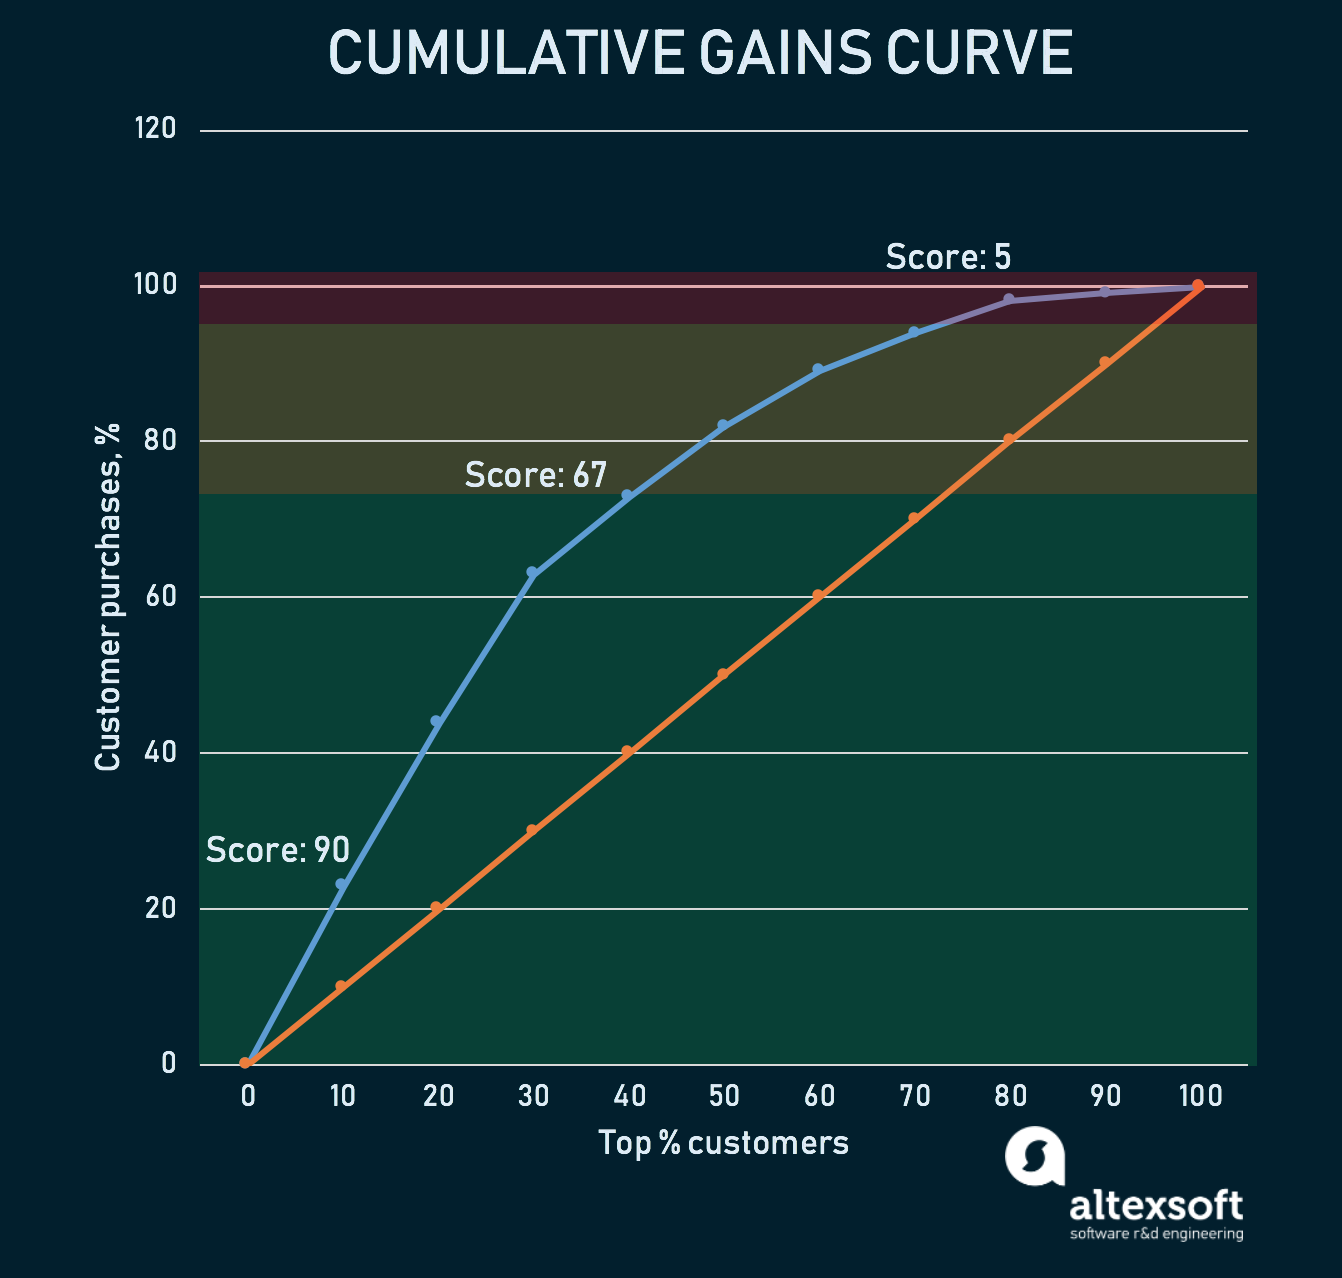 Cumulative gains curve